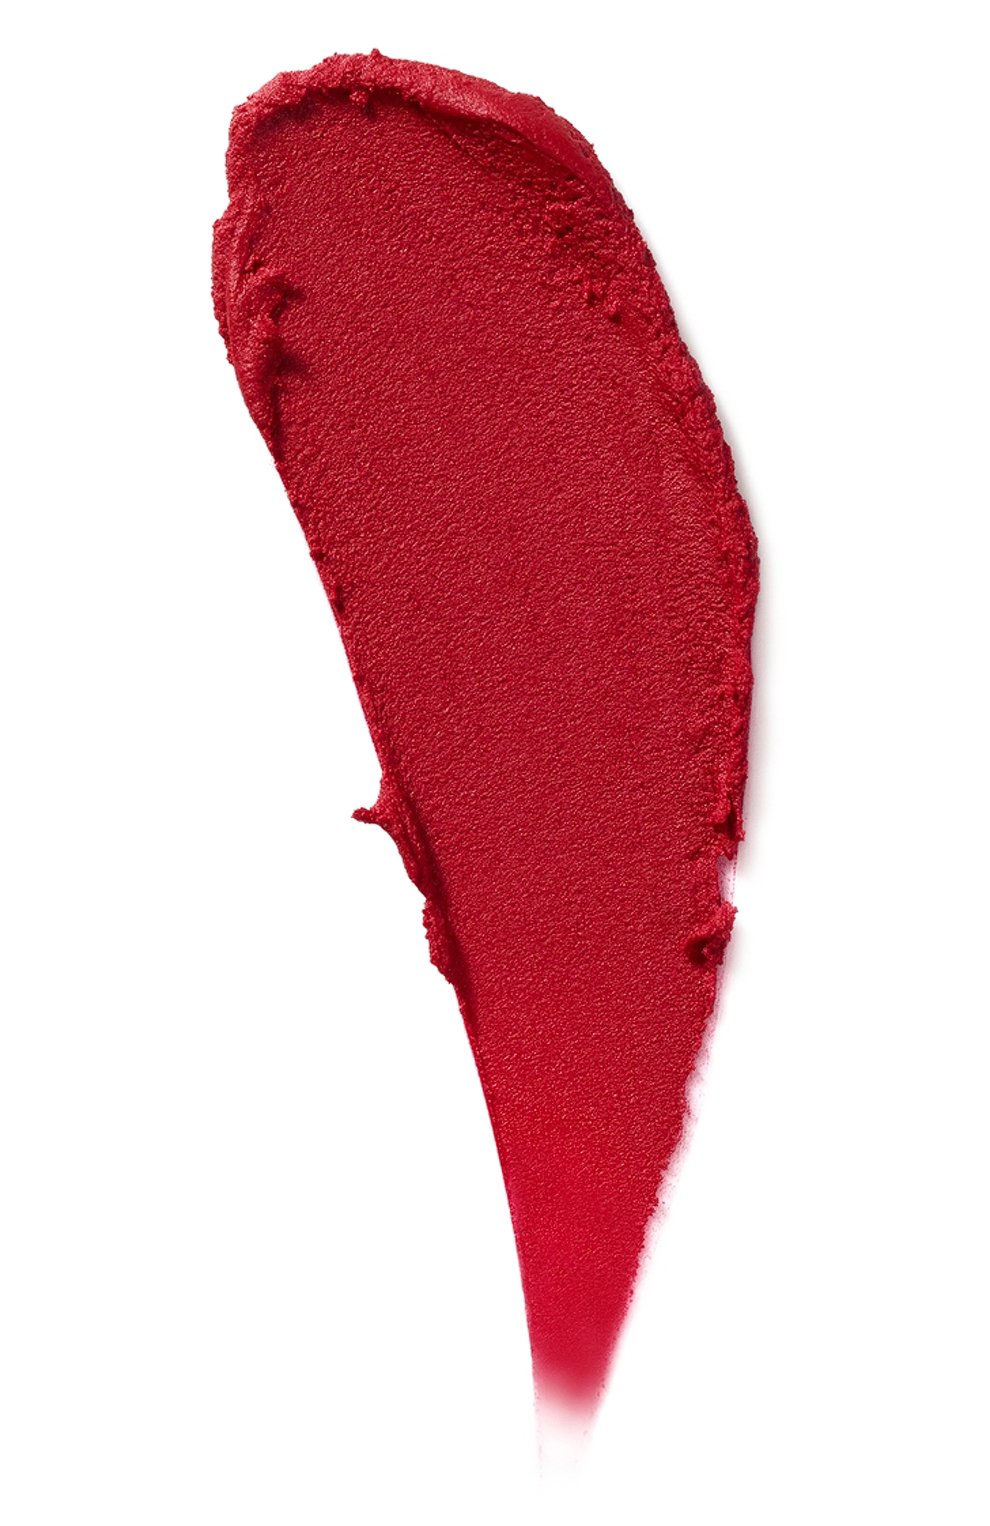 Помада для губ rouge unlimited amplified matte, rd187 SHU UEMURA  цвета, арт. 4935421705295 | Фото 2 (Финишное покрытие: Матовый)